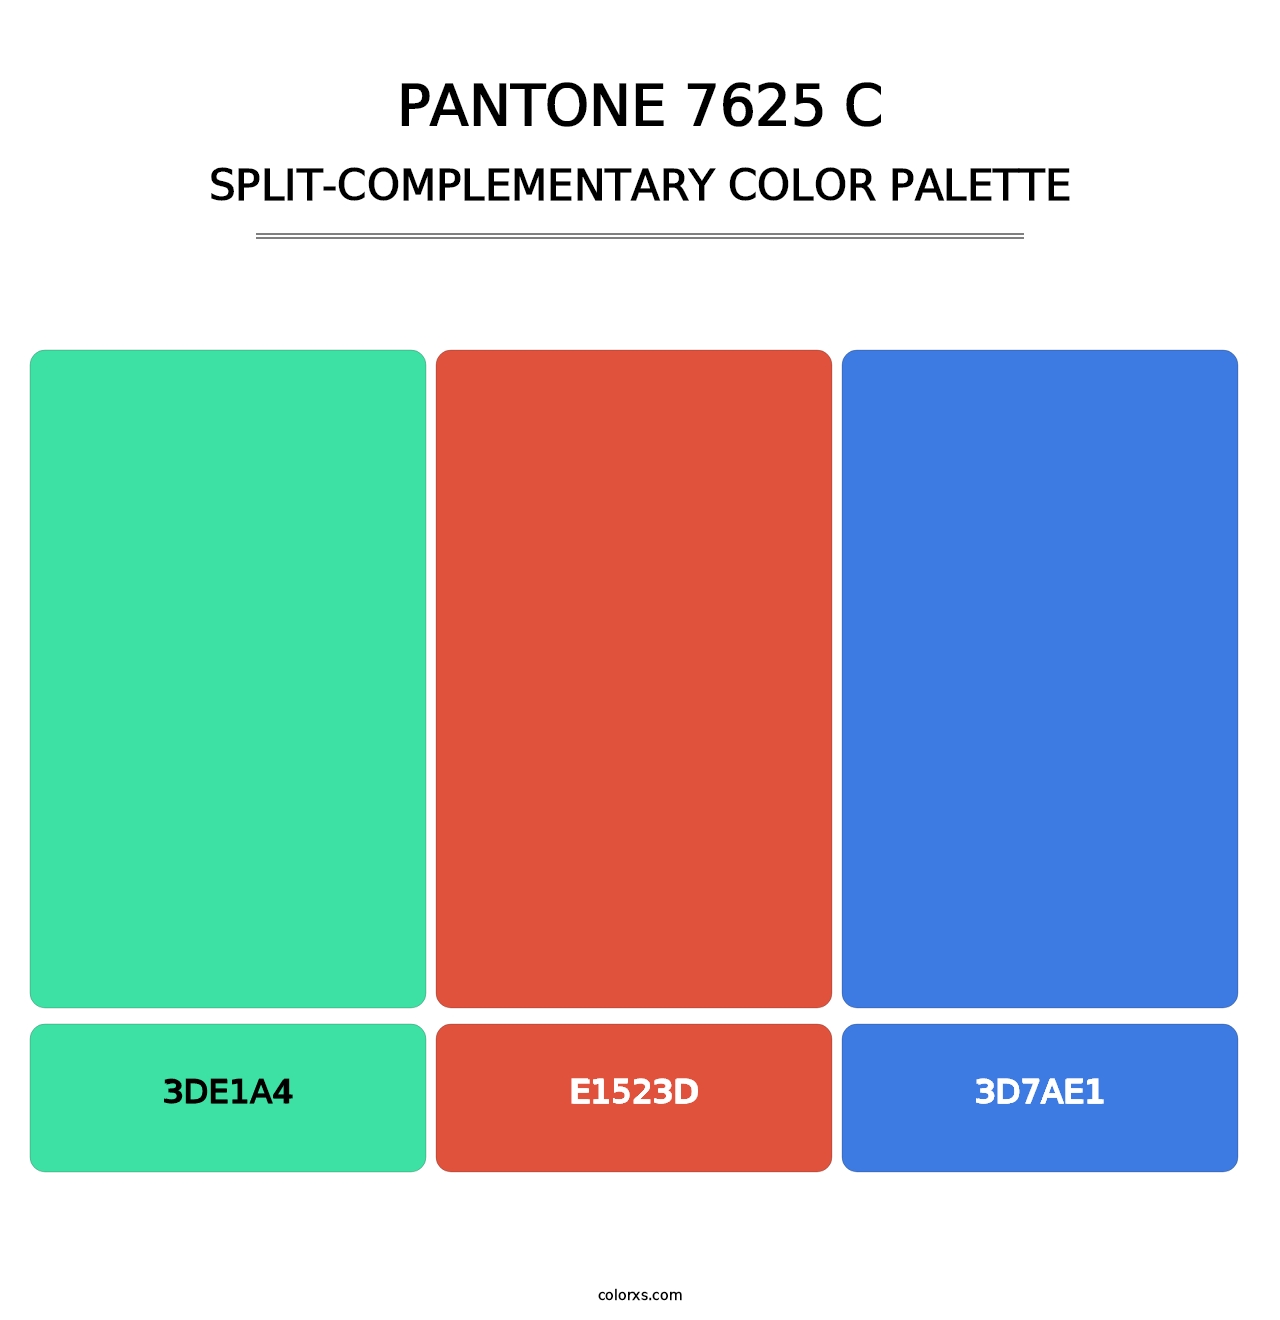 PANTONE 7625 C - Split-Complementary Color Palette